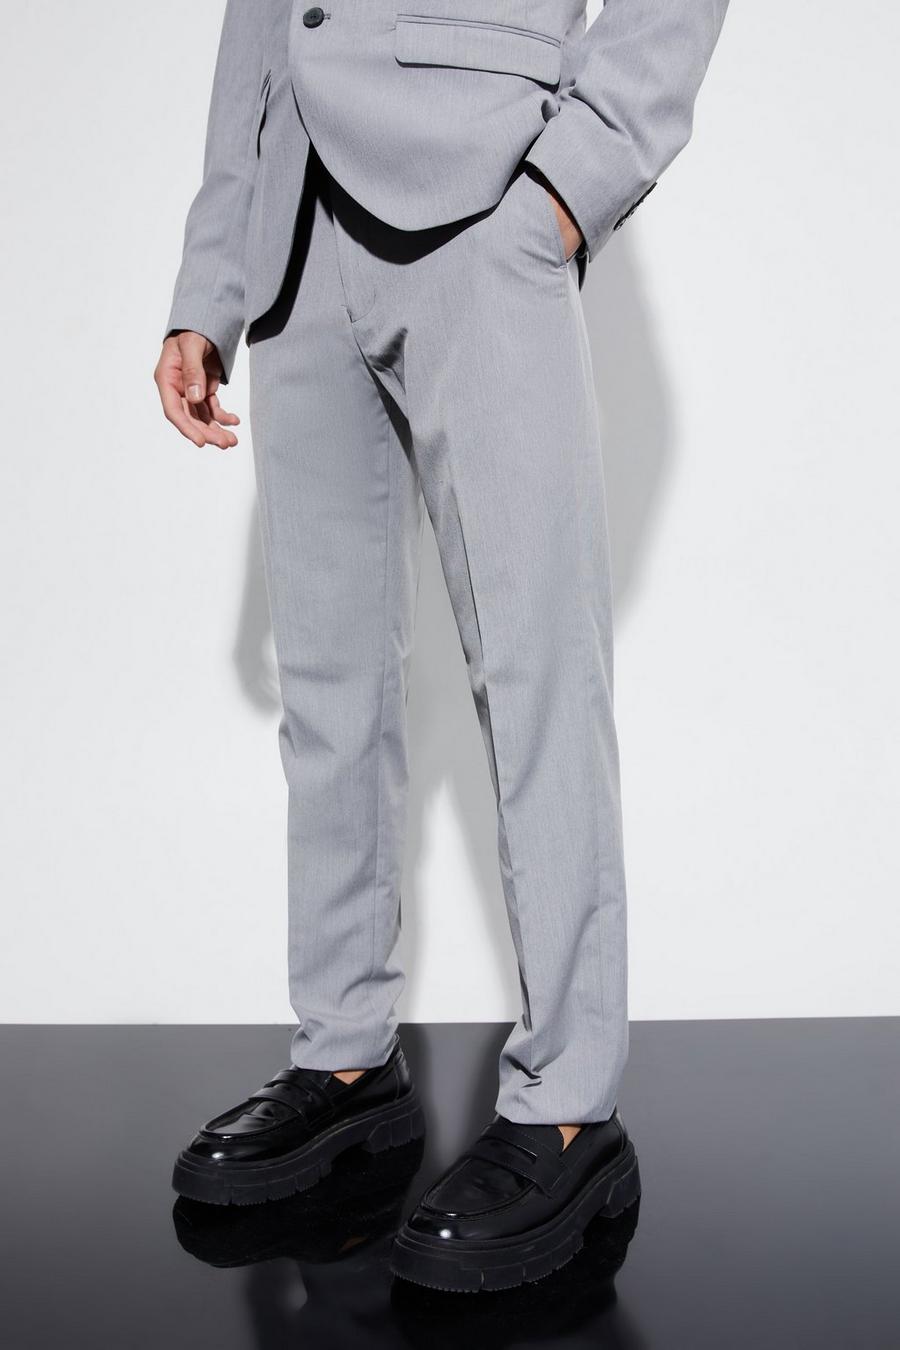 אפור grigio מכנסי חליפה בגזרה צרה